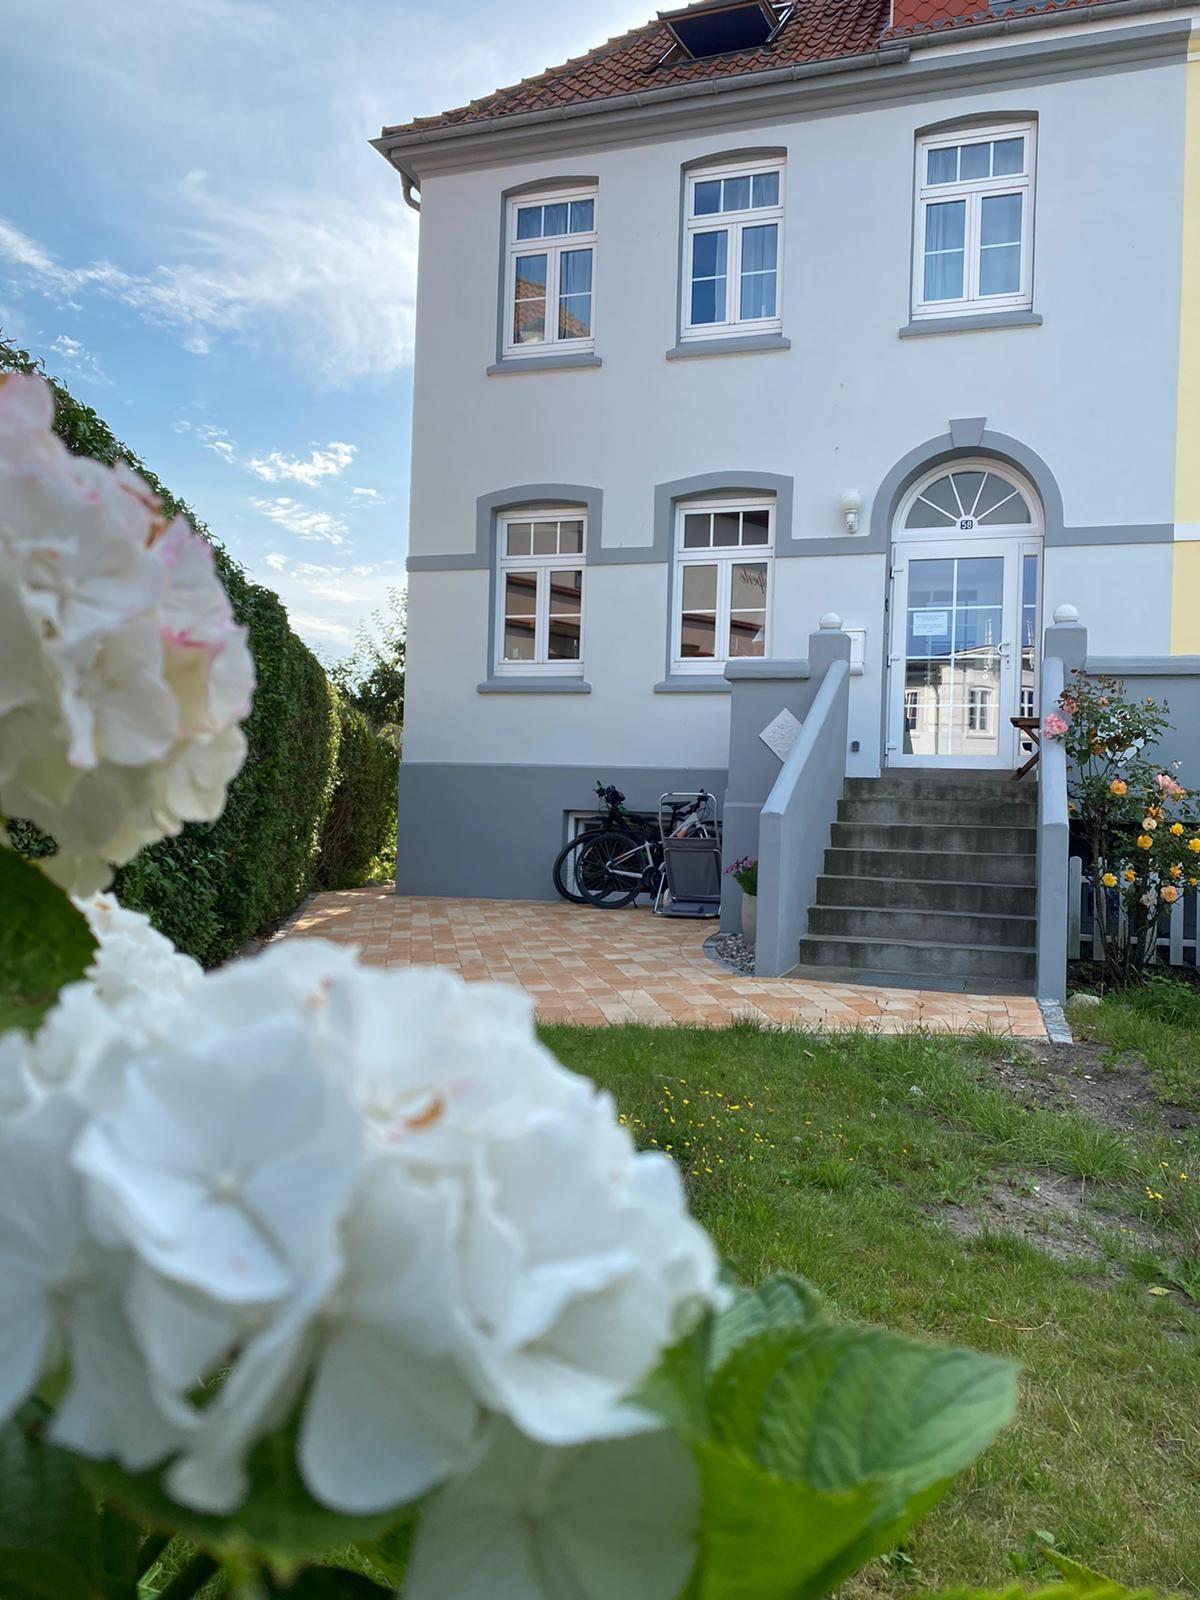 Hell und freundlich eingerichtete Wohnung mit Blic Ferienhaus in Schleswig Holstein